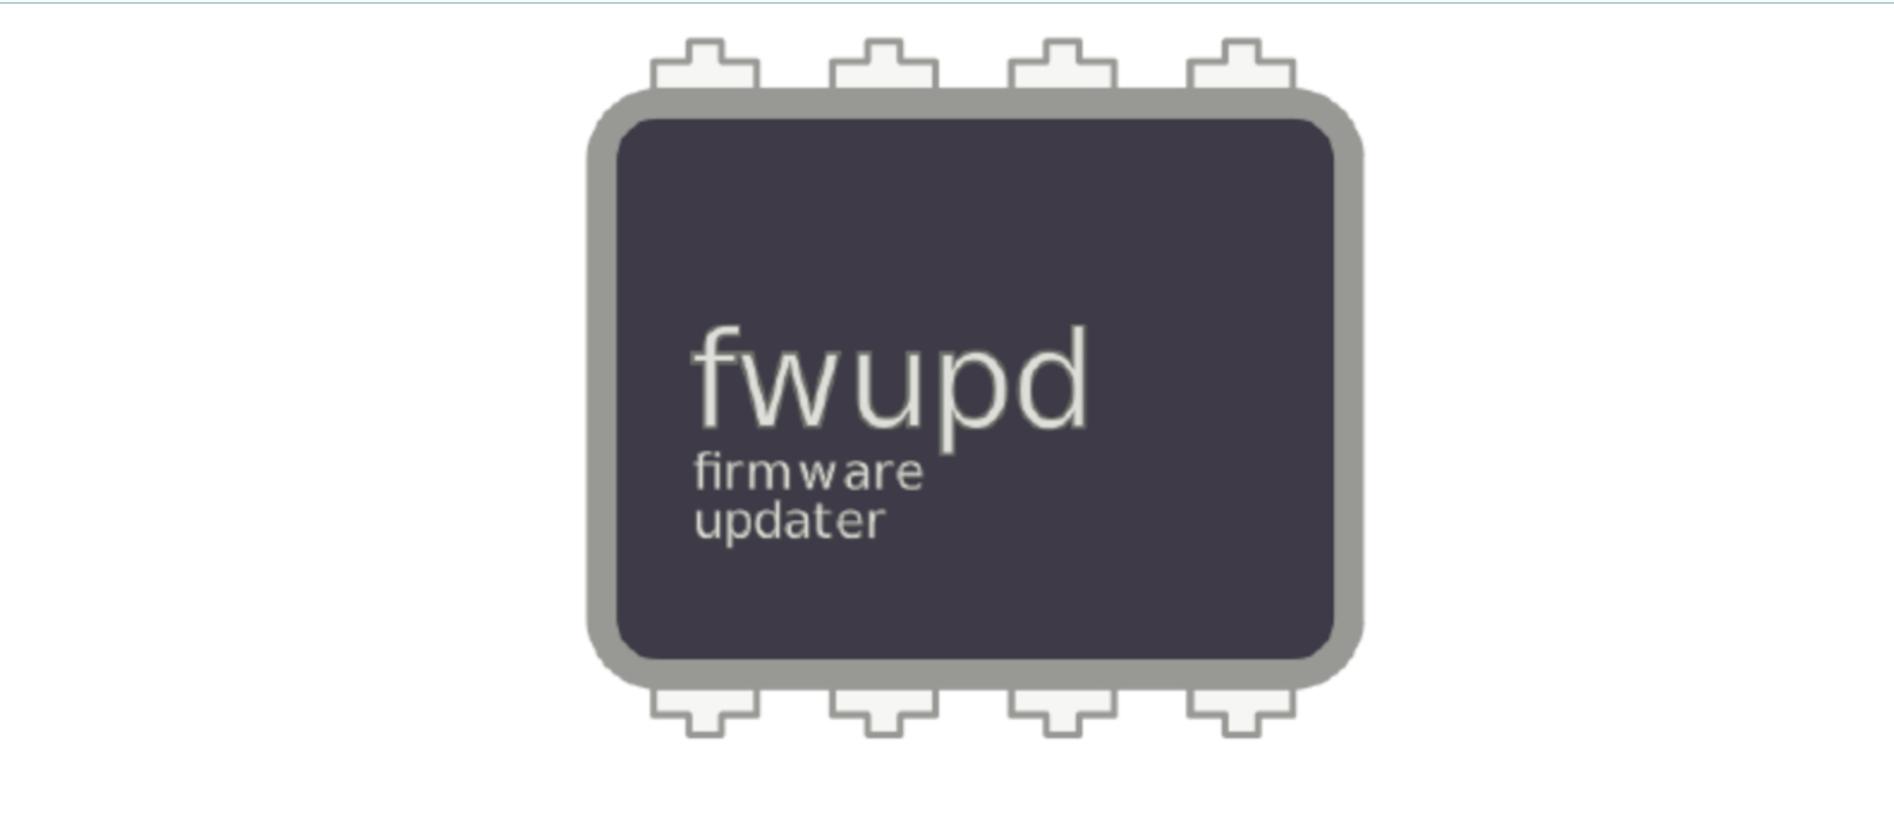 Fwupd 1.9.14 corrige a atualização do leitor de impressão digital em laptops Framework 13 e 16